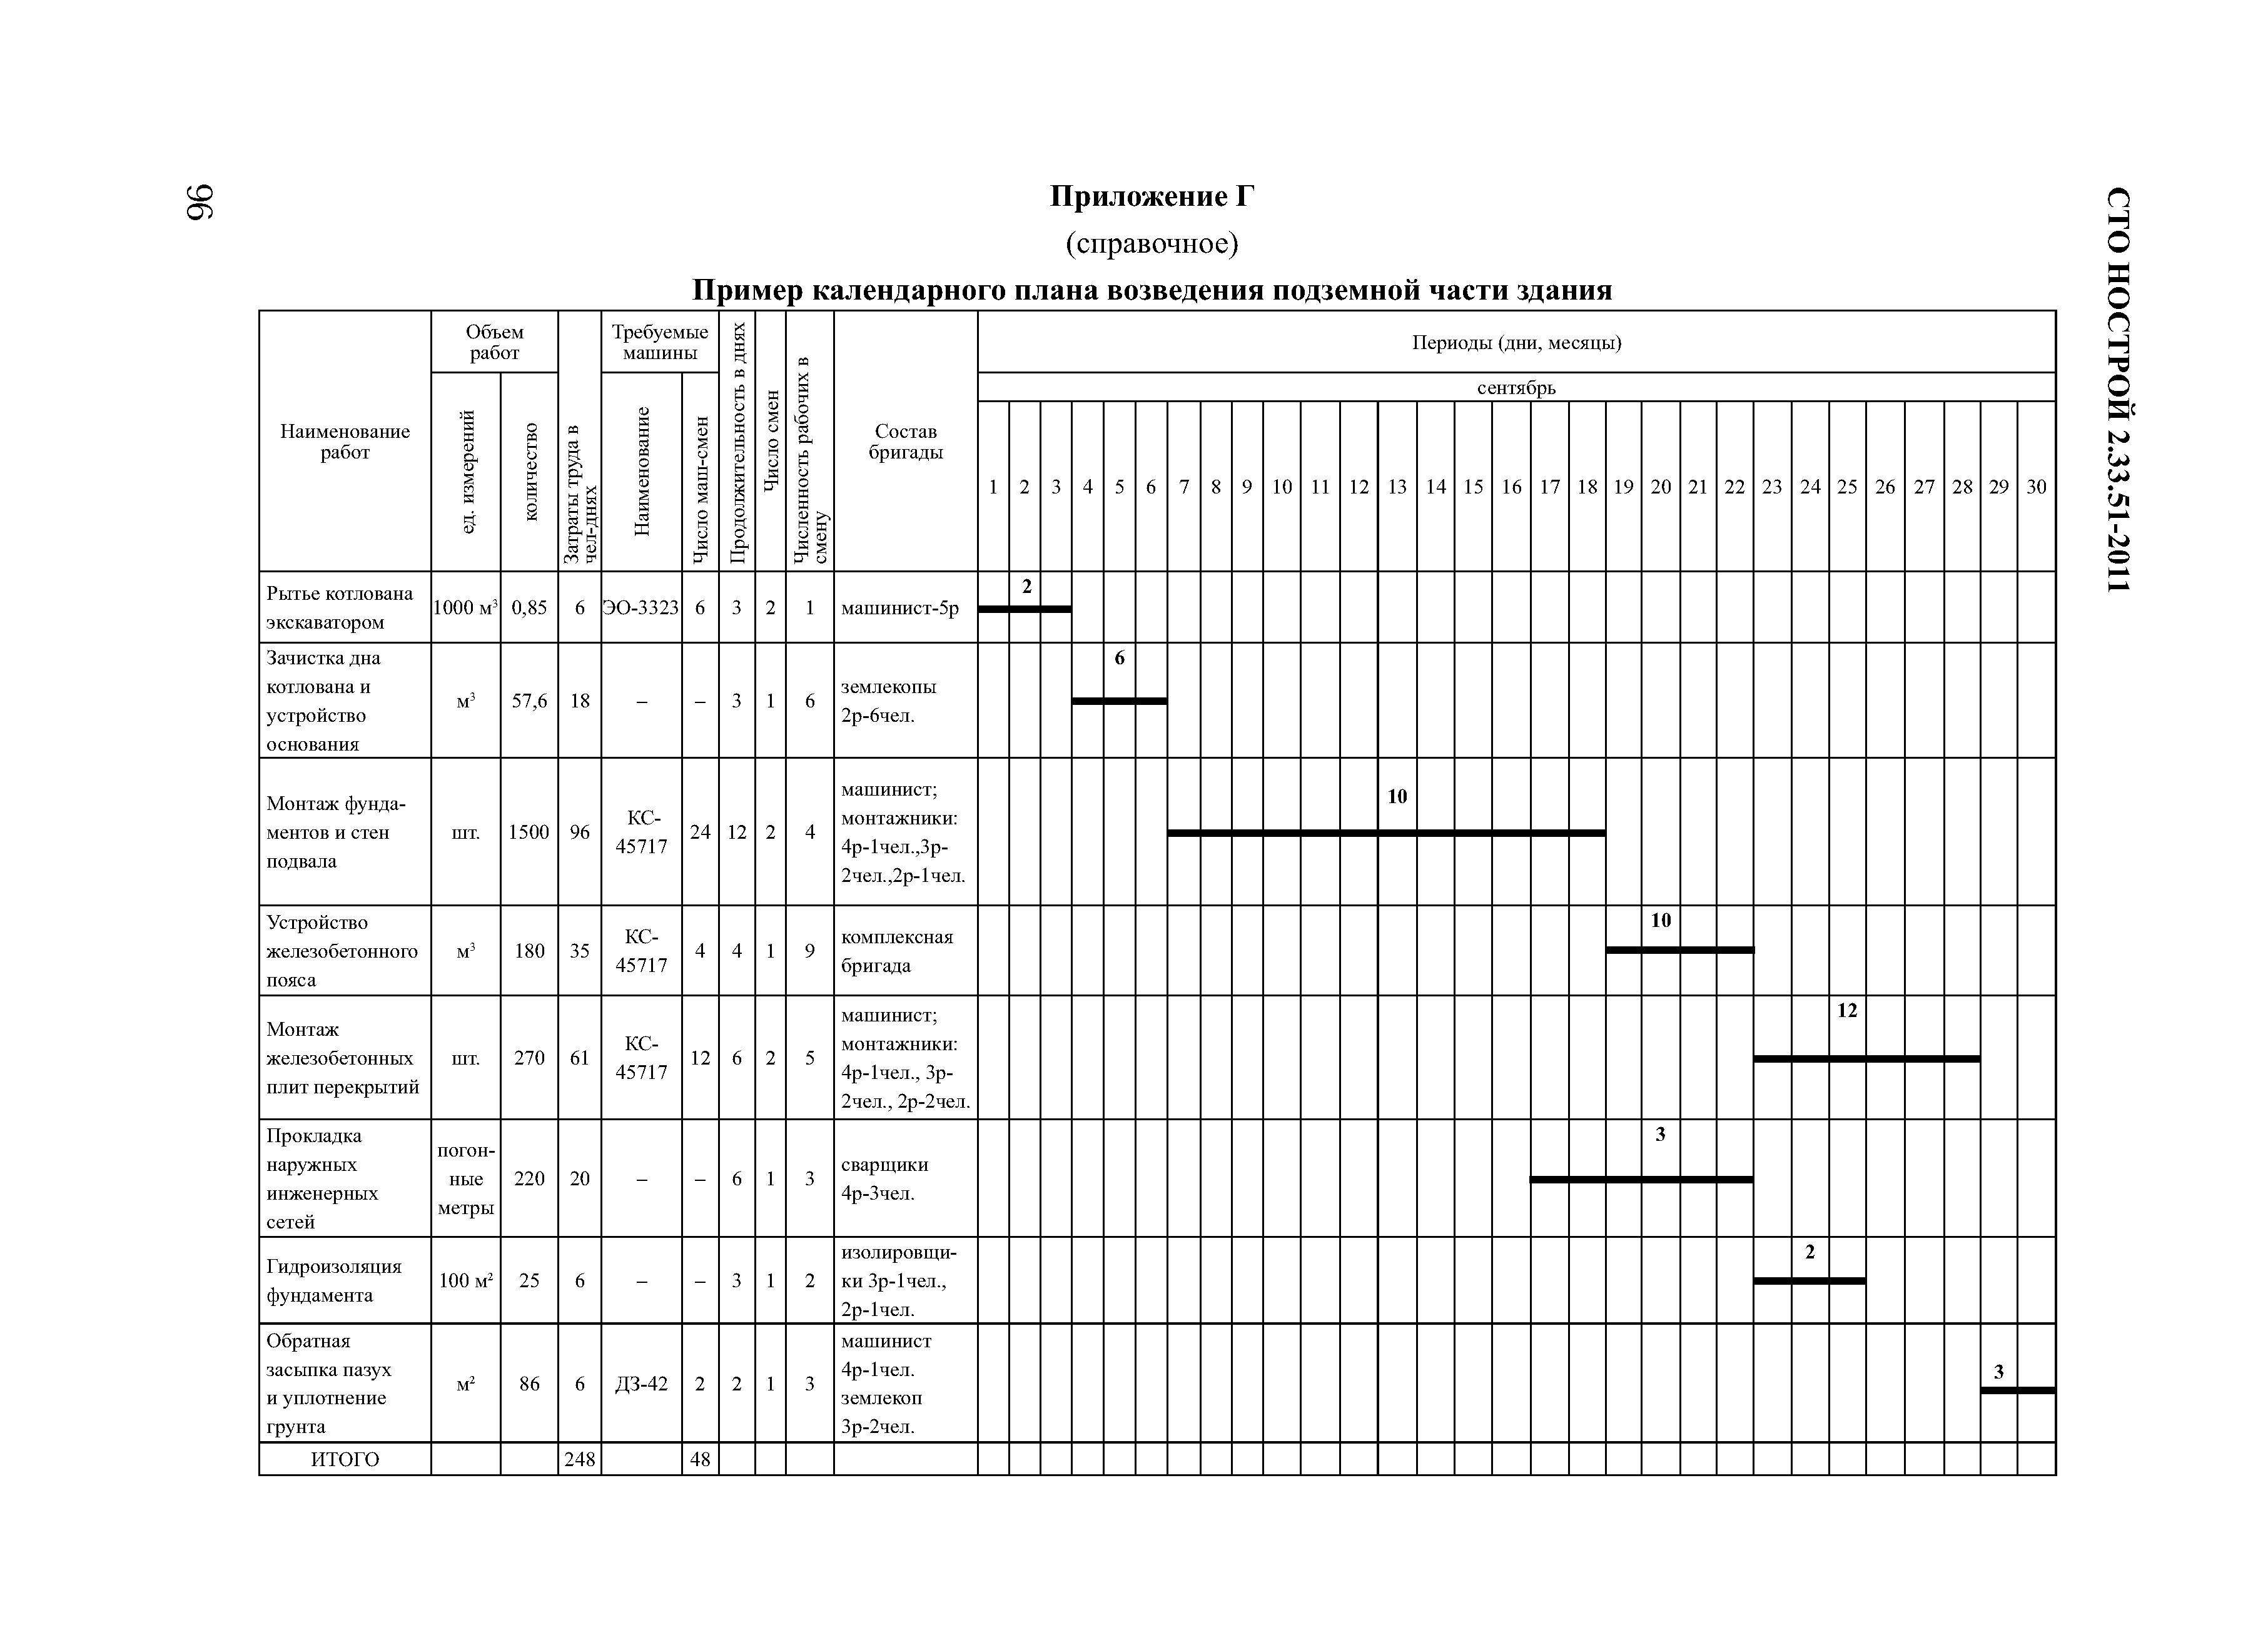 Календарный план и график производства работ в чем разница